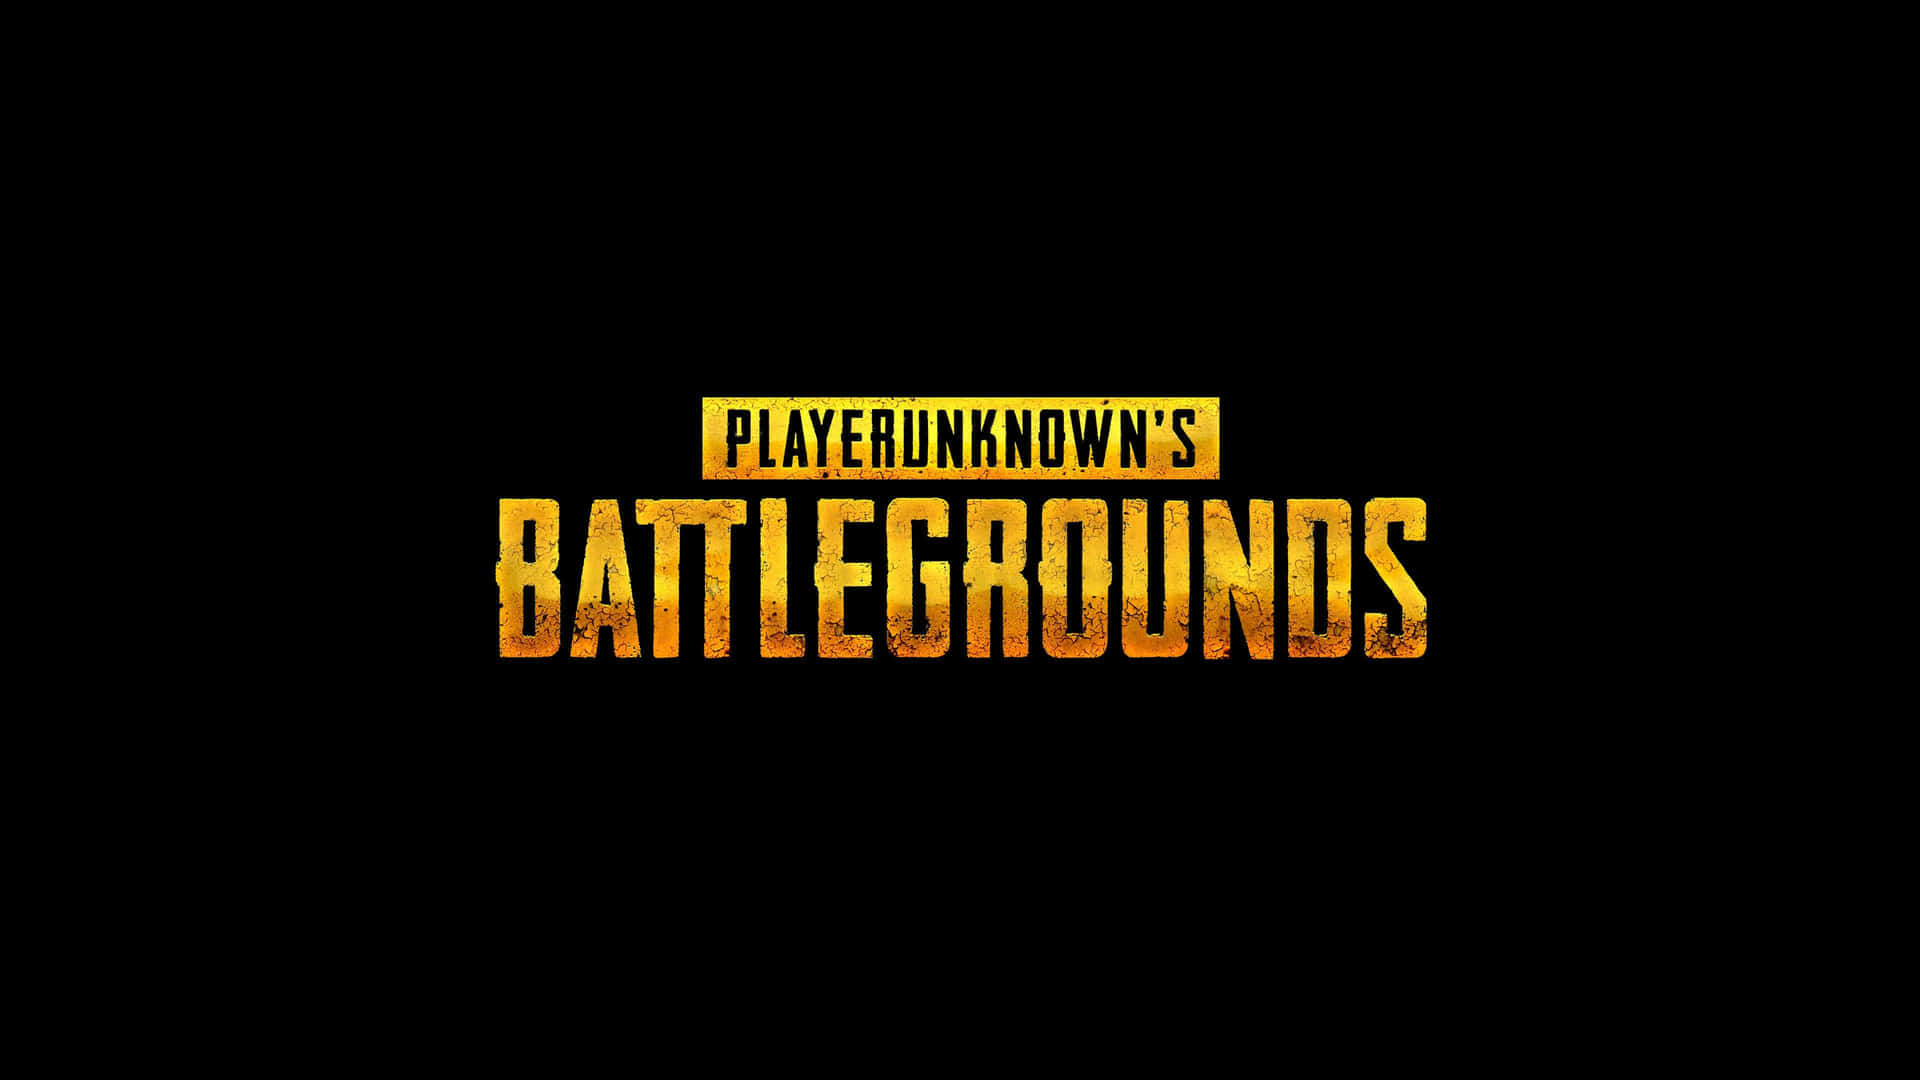 Bildplayerunknown's Battlegrounds-logo Wallpaper